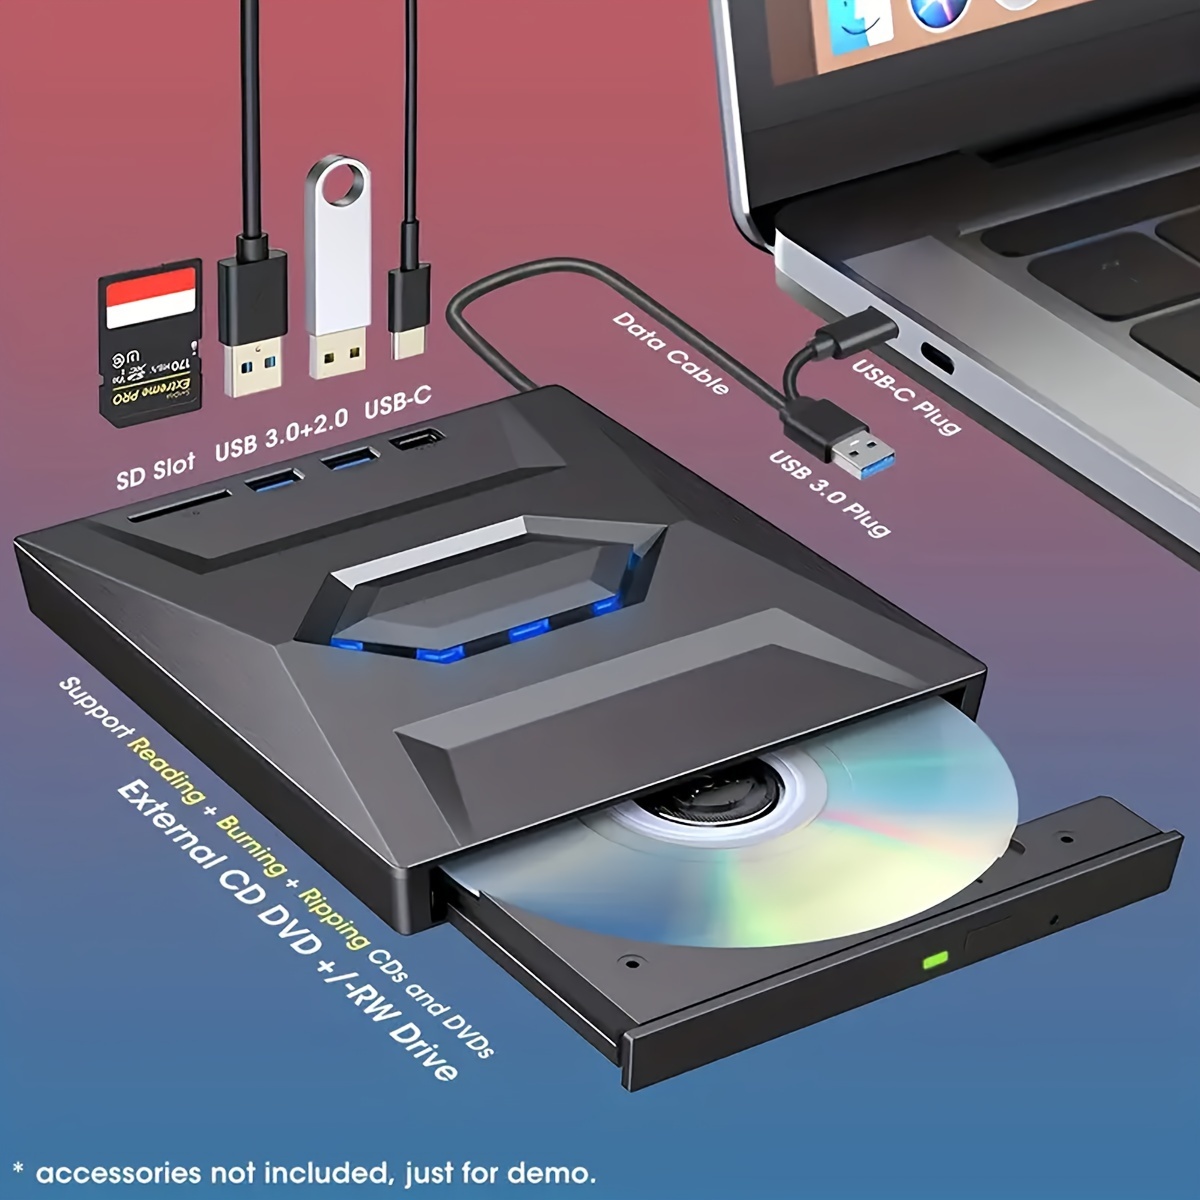 Lecteur CD DVD Externe,USB 3.0 Portable Graveur et Lecteur de CD-RW/DVD-RW